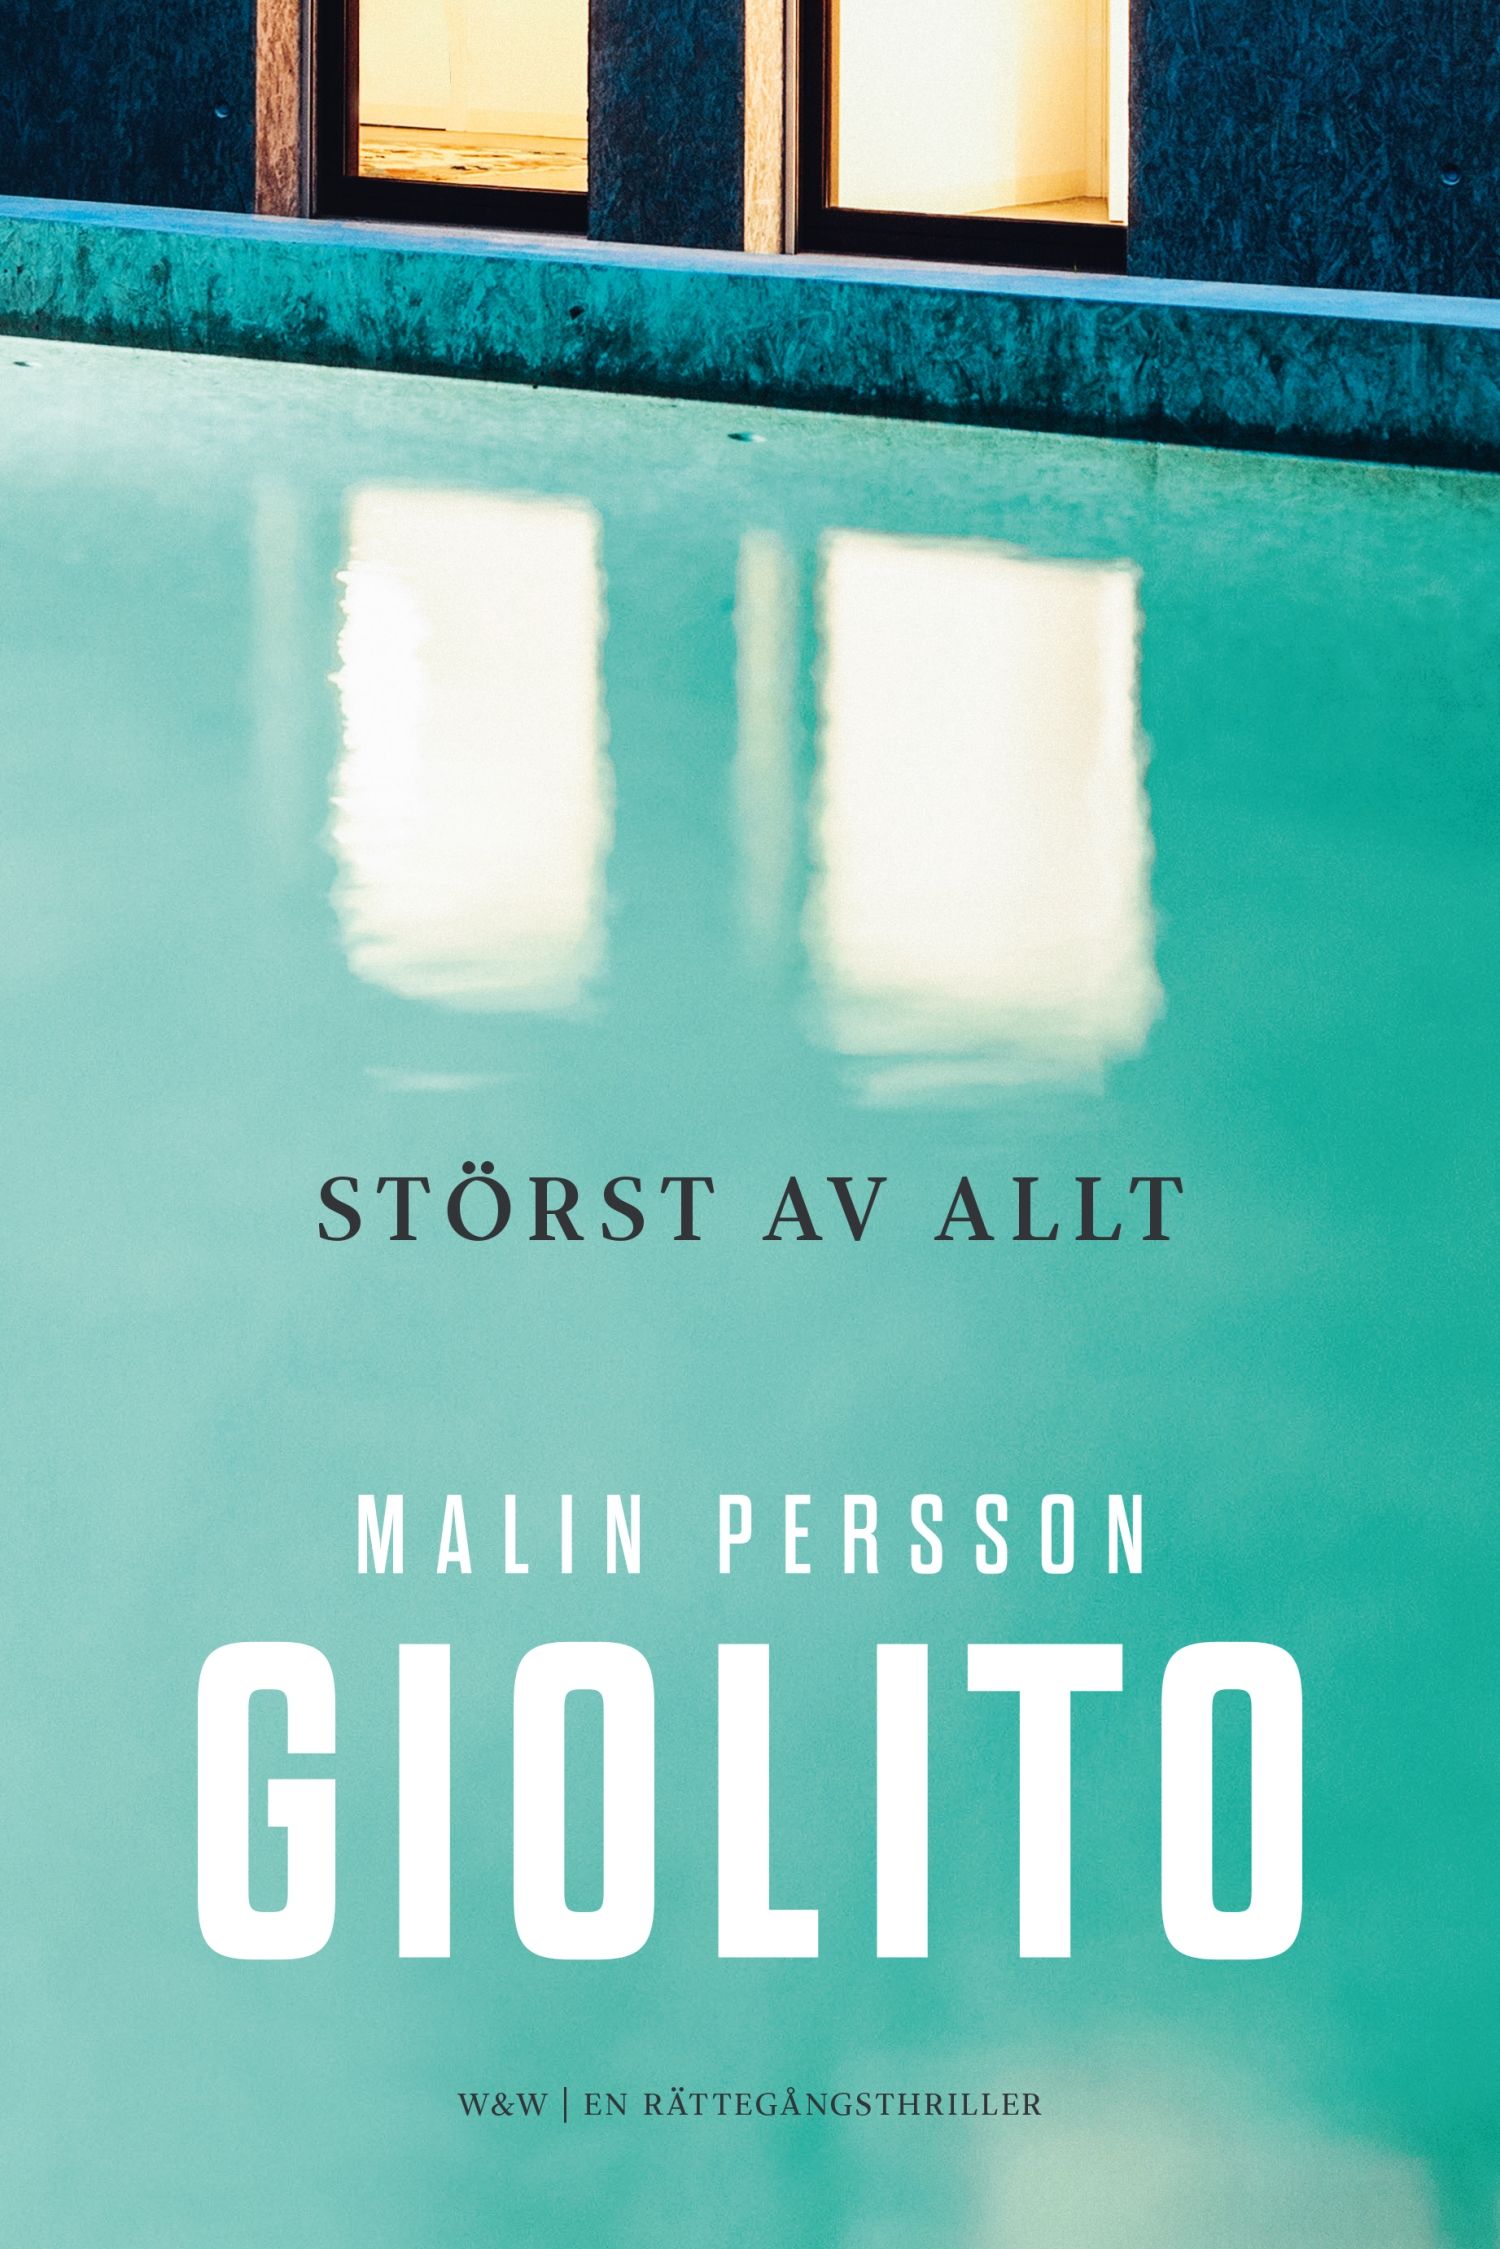 Störst av allt, e-bok av Malin Persson Giolito